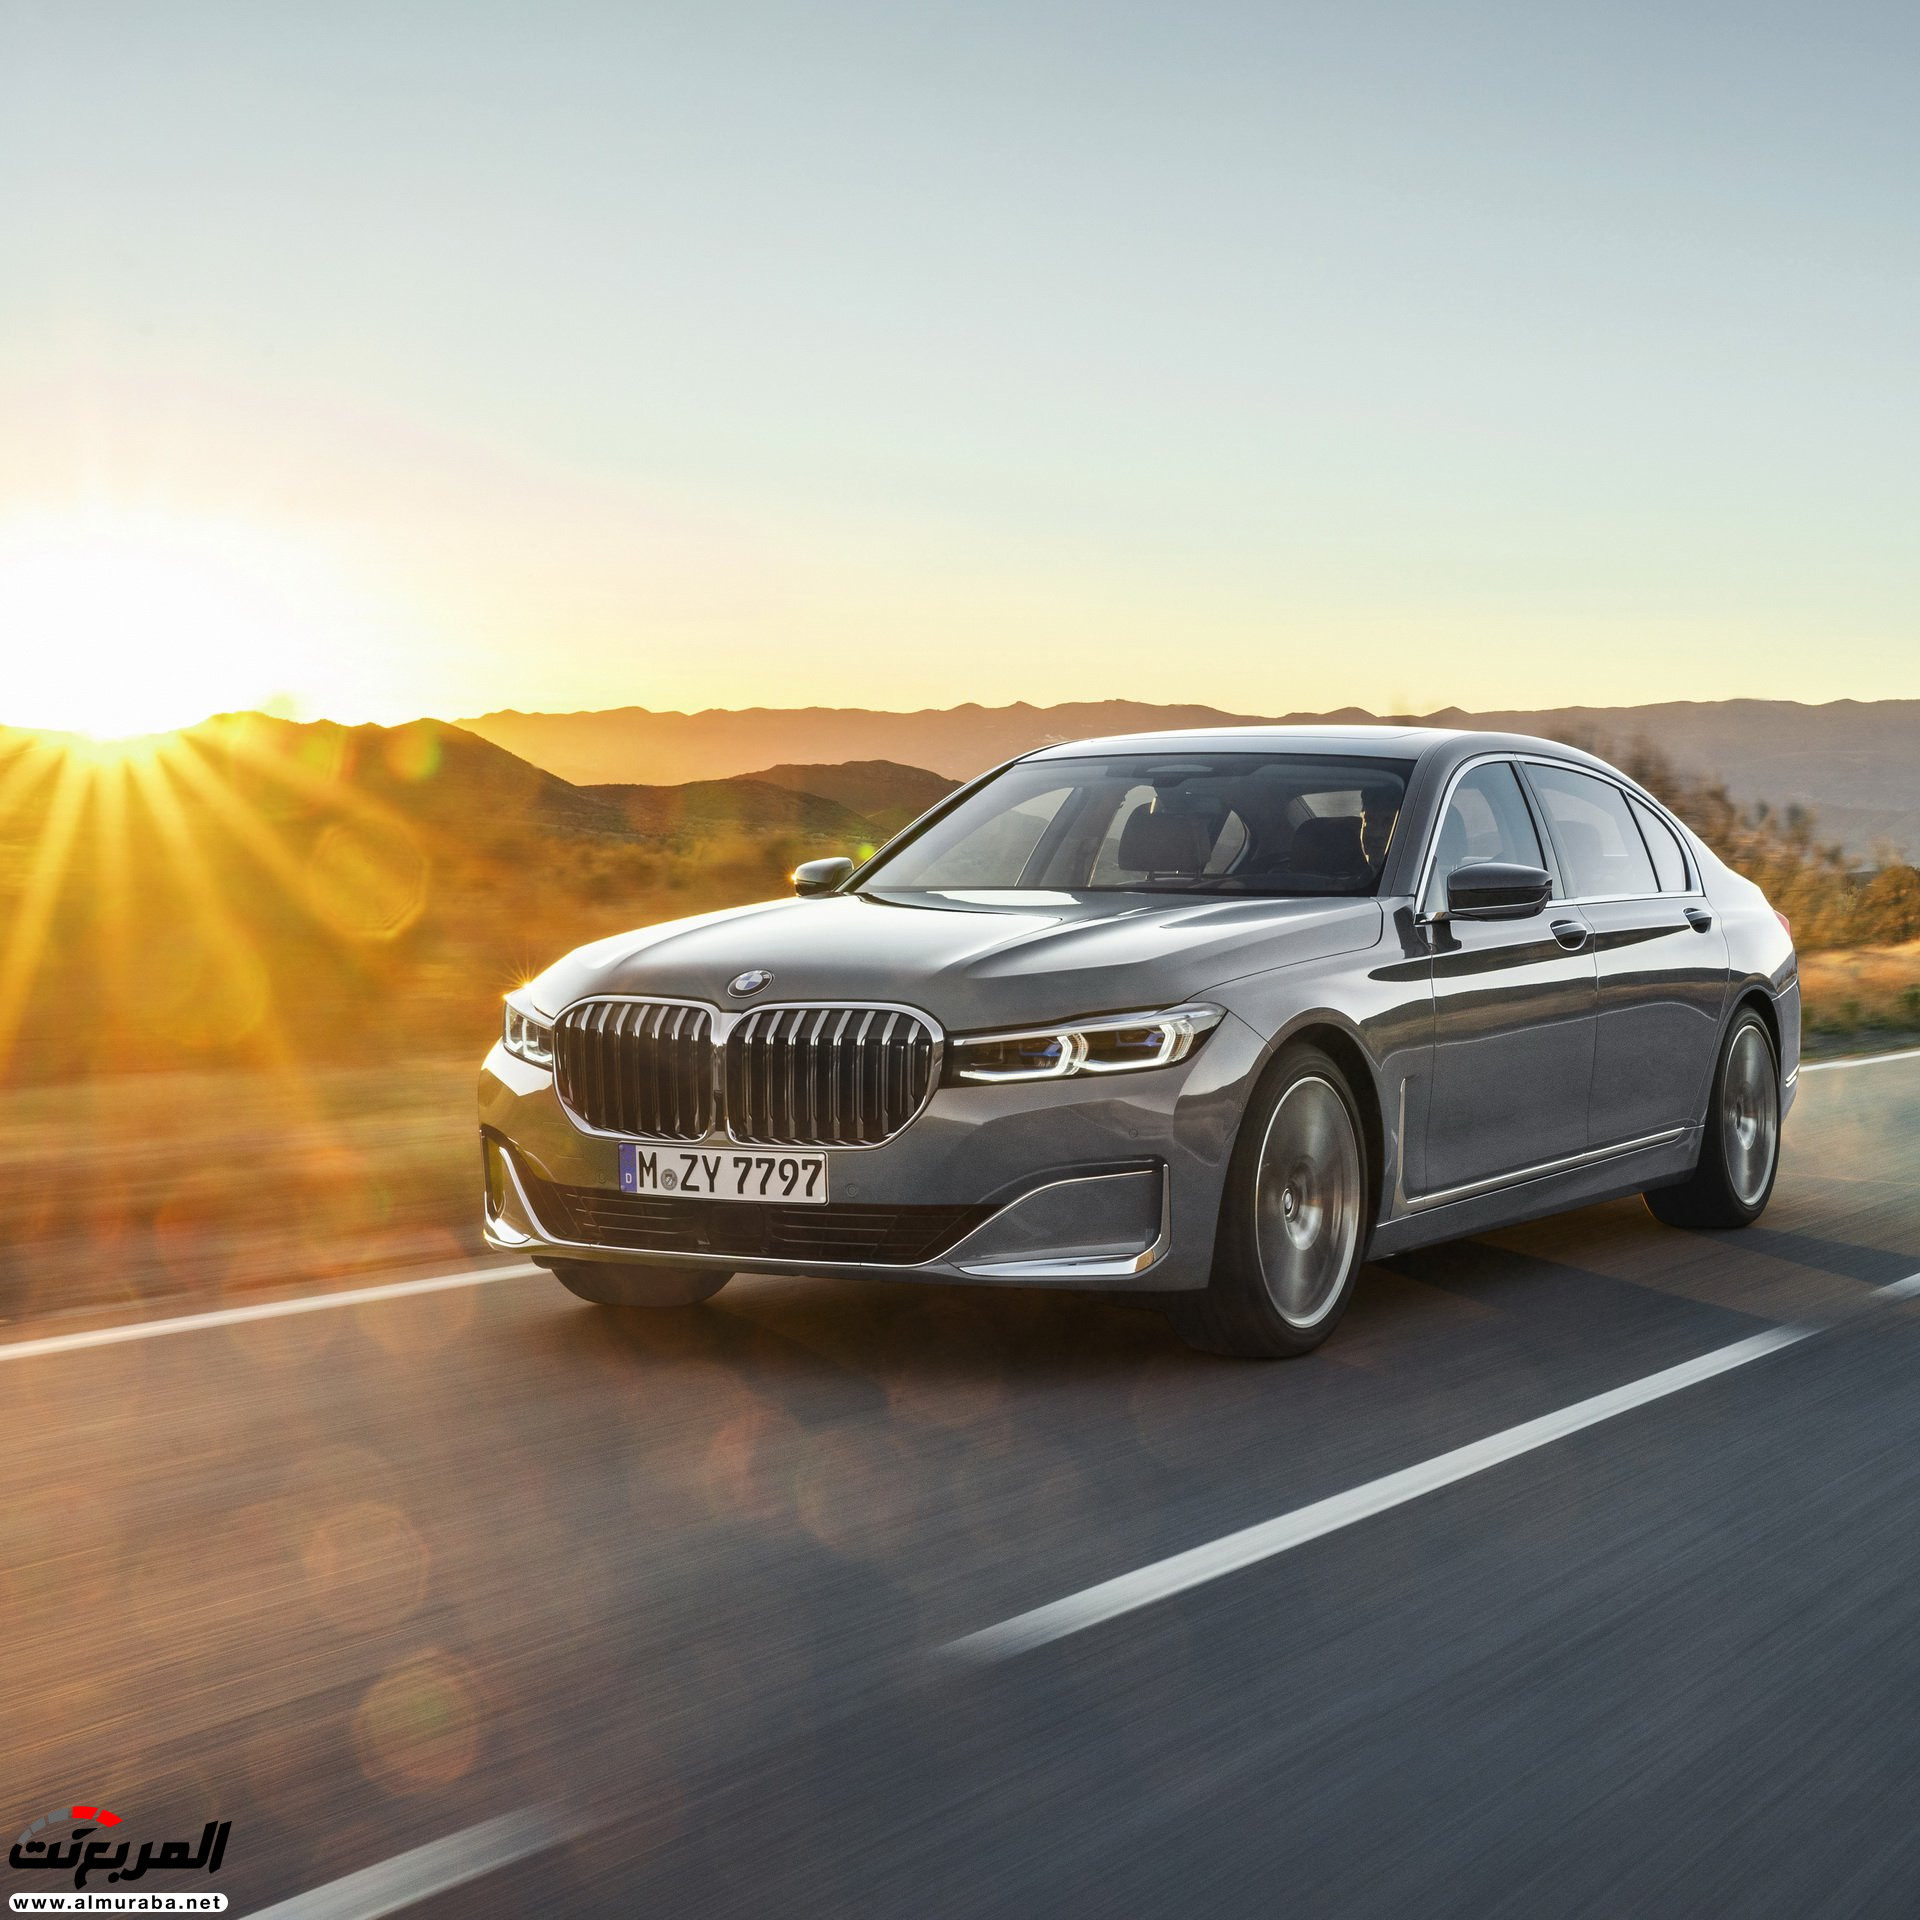 بي ام دبليو الفئة السابعة 2020 المحدثة تكشف نفسها رسمياً "صور ومواصفات" BMW 7 Series 19